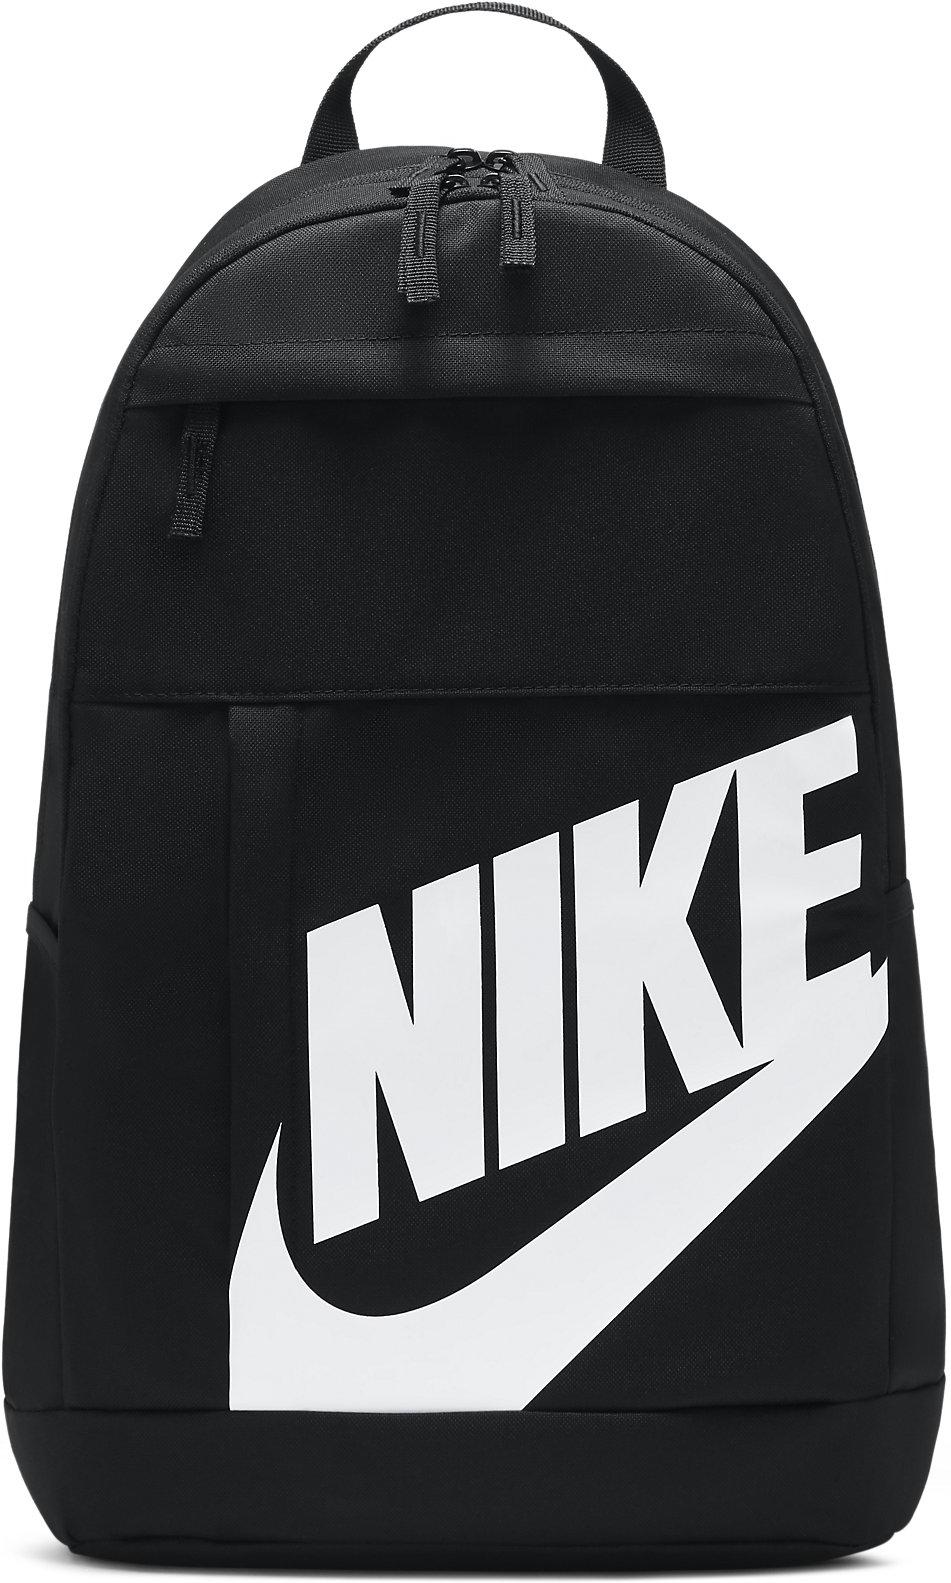 Rugzak Nike Elemental Backpack